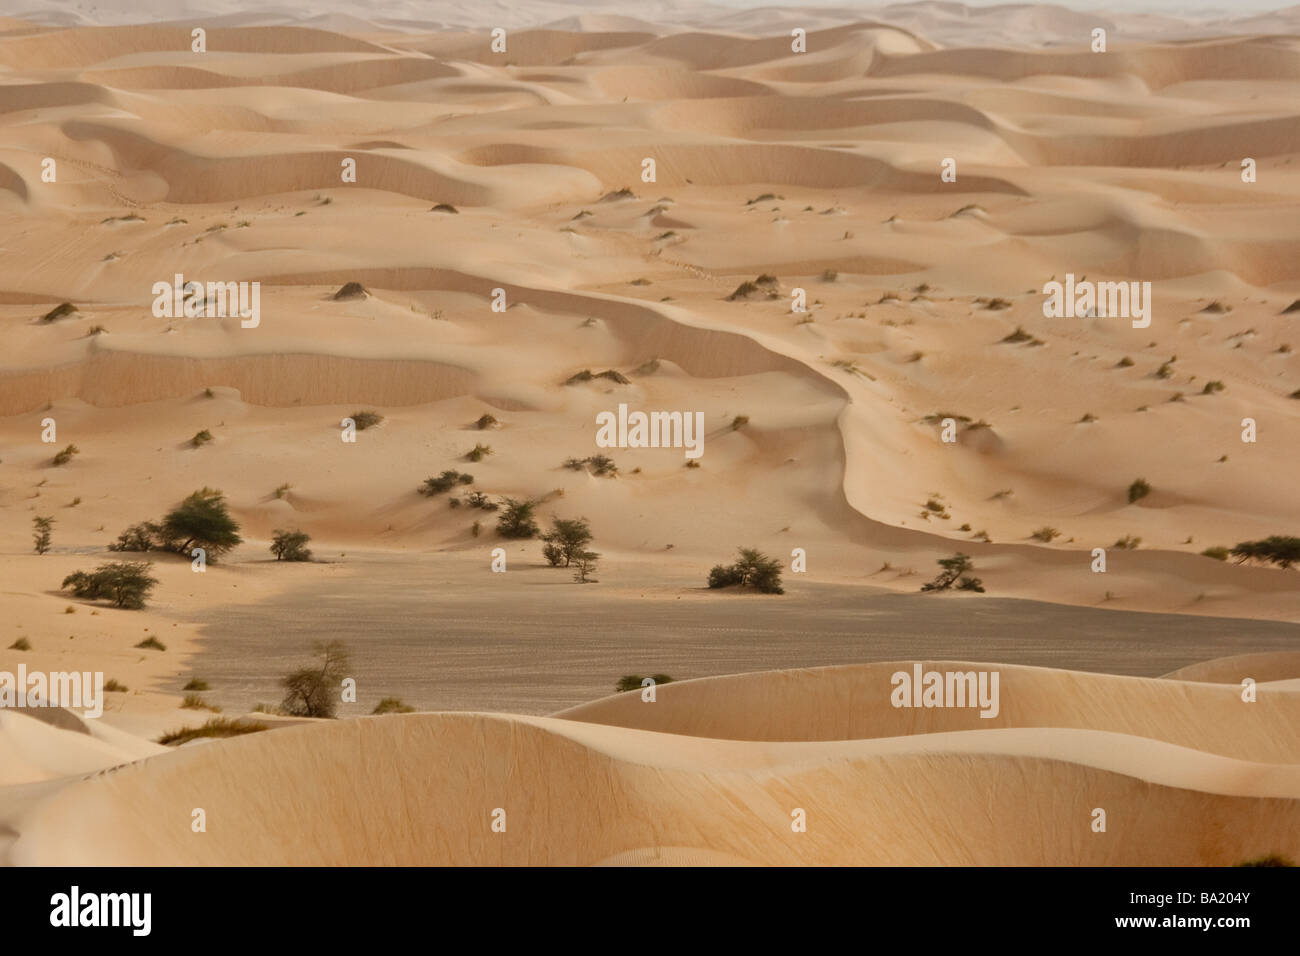 Sand Dunes of the Sahara Desert near Chinguetti Mauritania Stock Photo